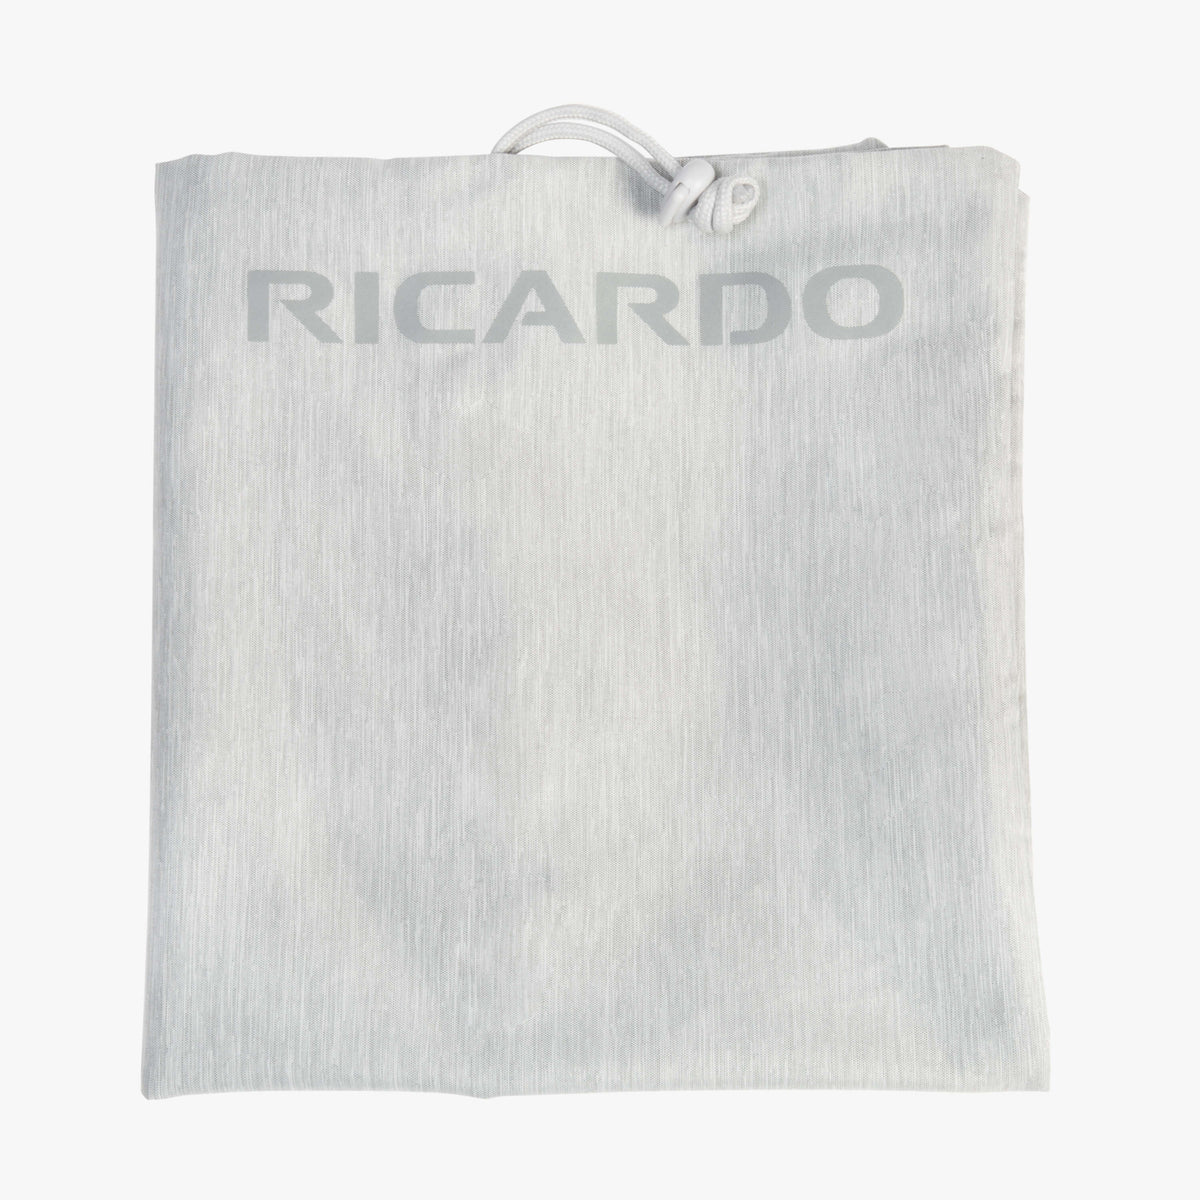 Ricardo Beverly Hills Essentials 2.0 Laundry Bag